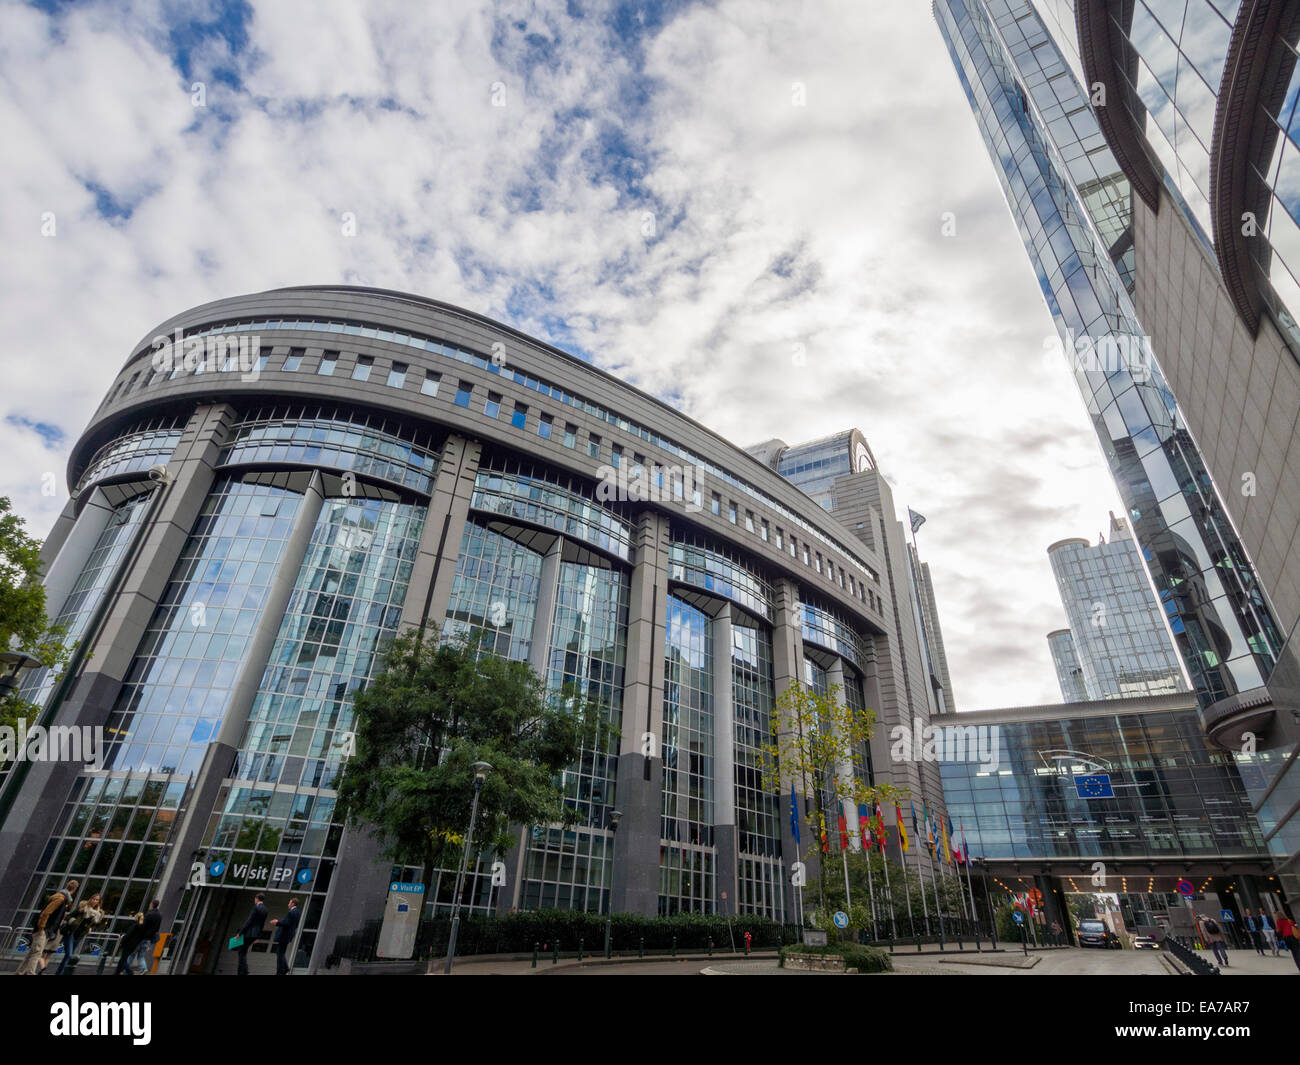 European Union Parliament building in Brussels, Belgium, Europe Stock Photo